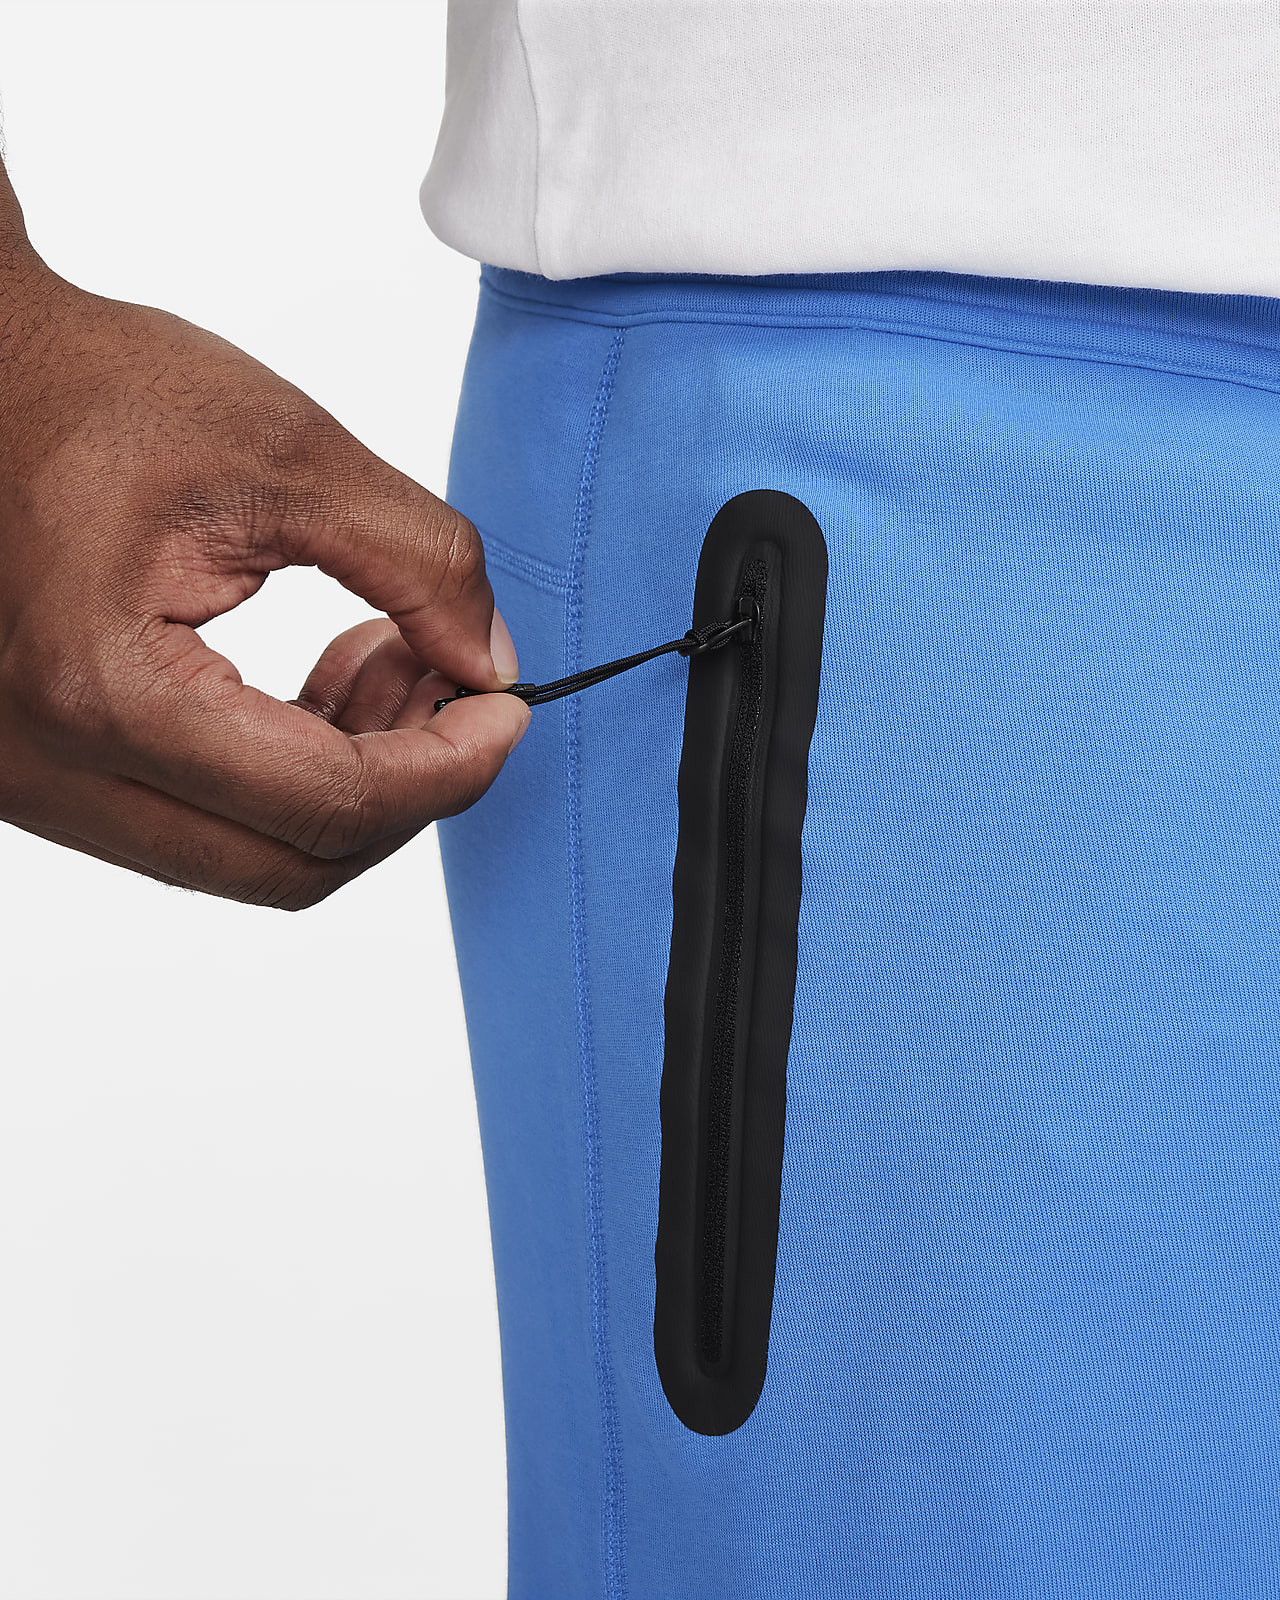 Nike Open-hem Sweatpants for Men